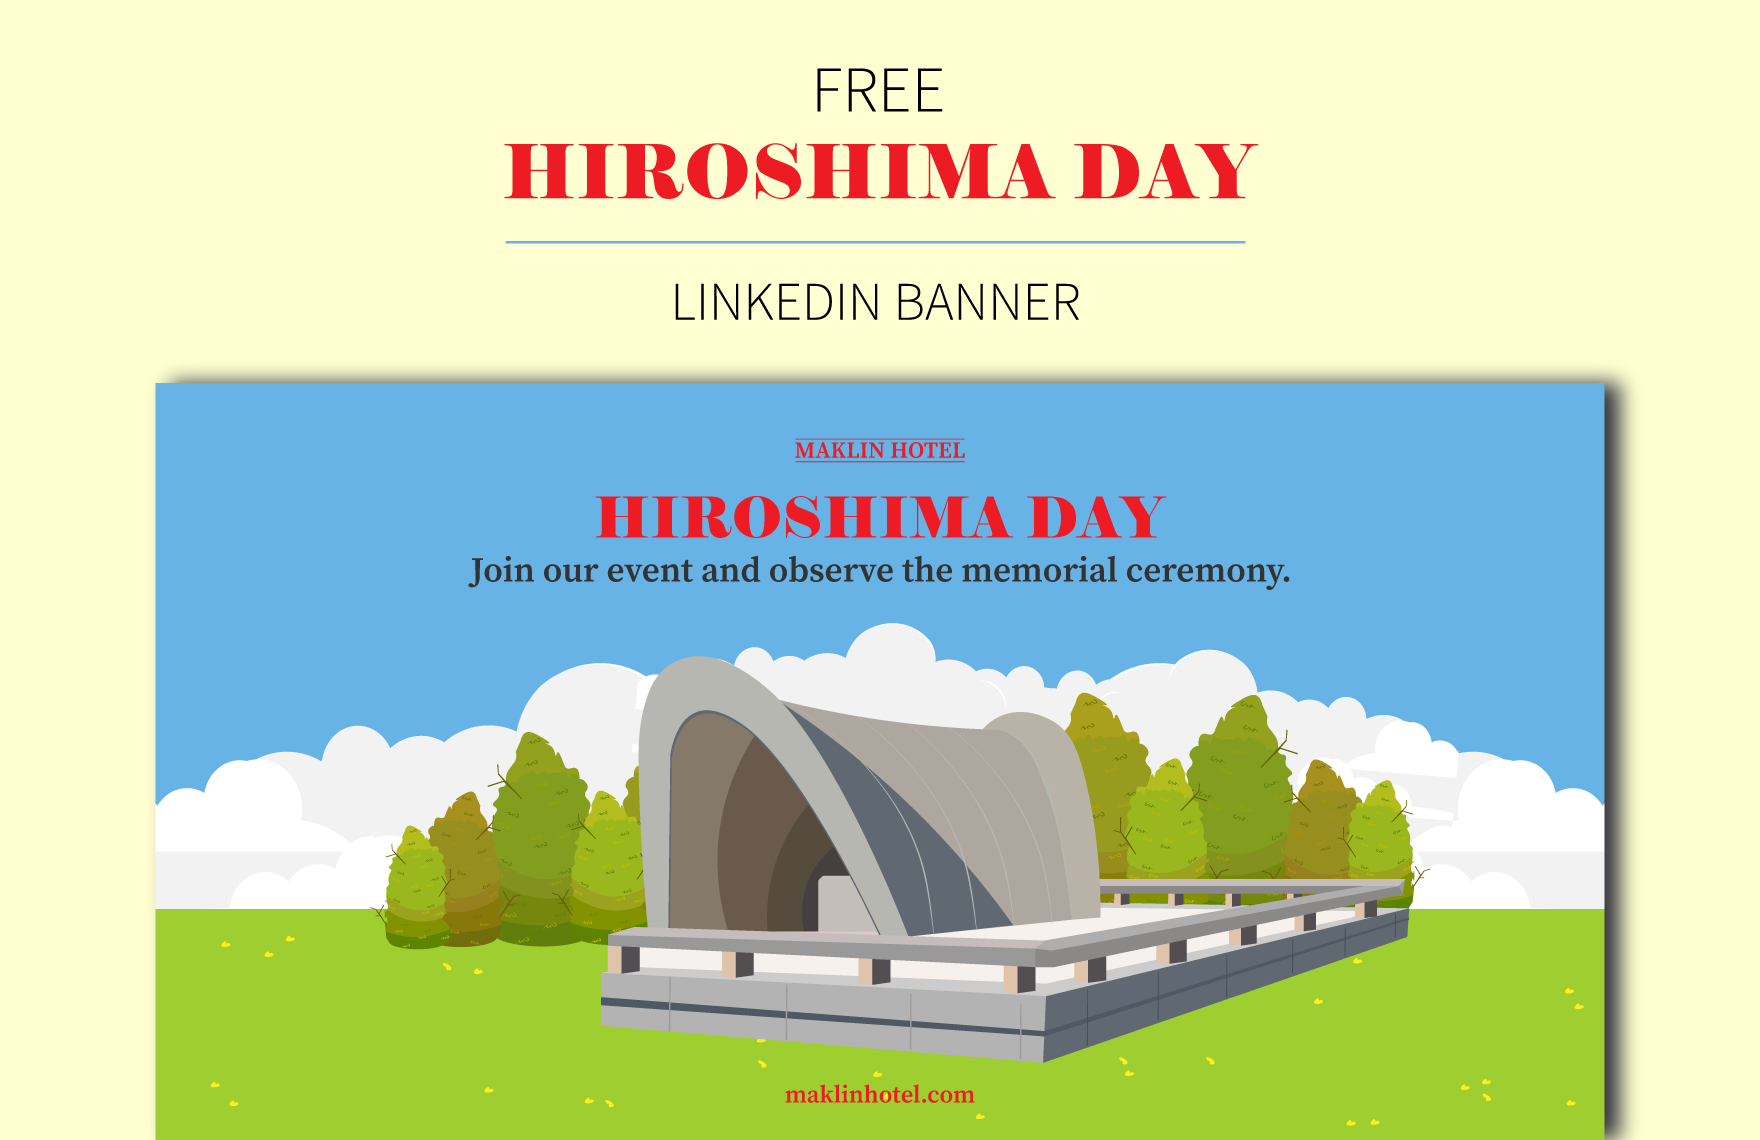 Free Hiroshima Day  Linkedin Banner